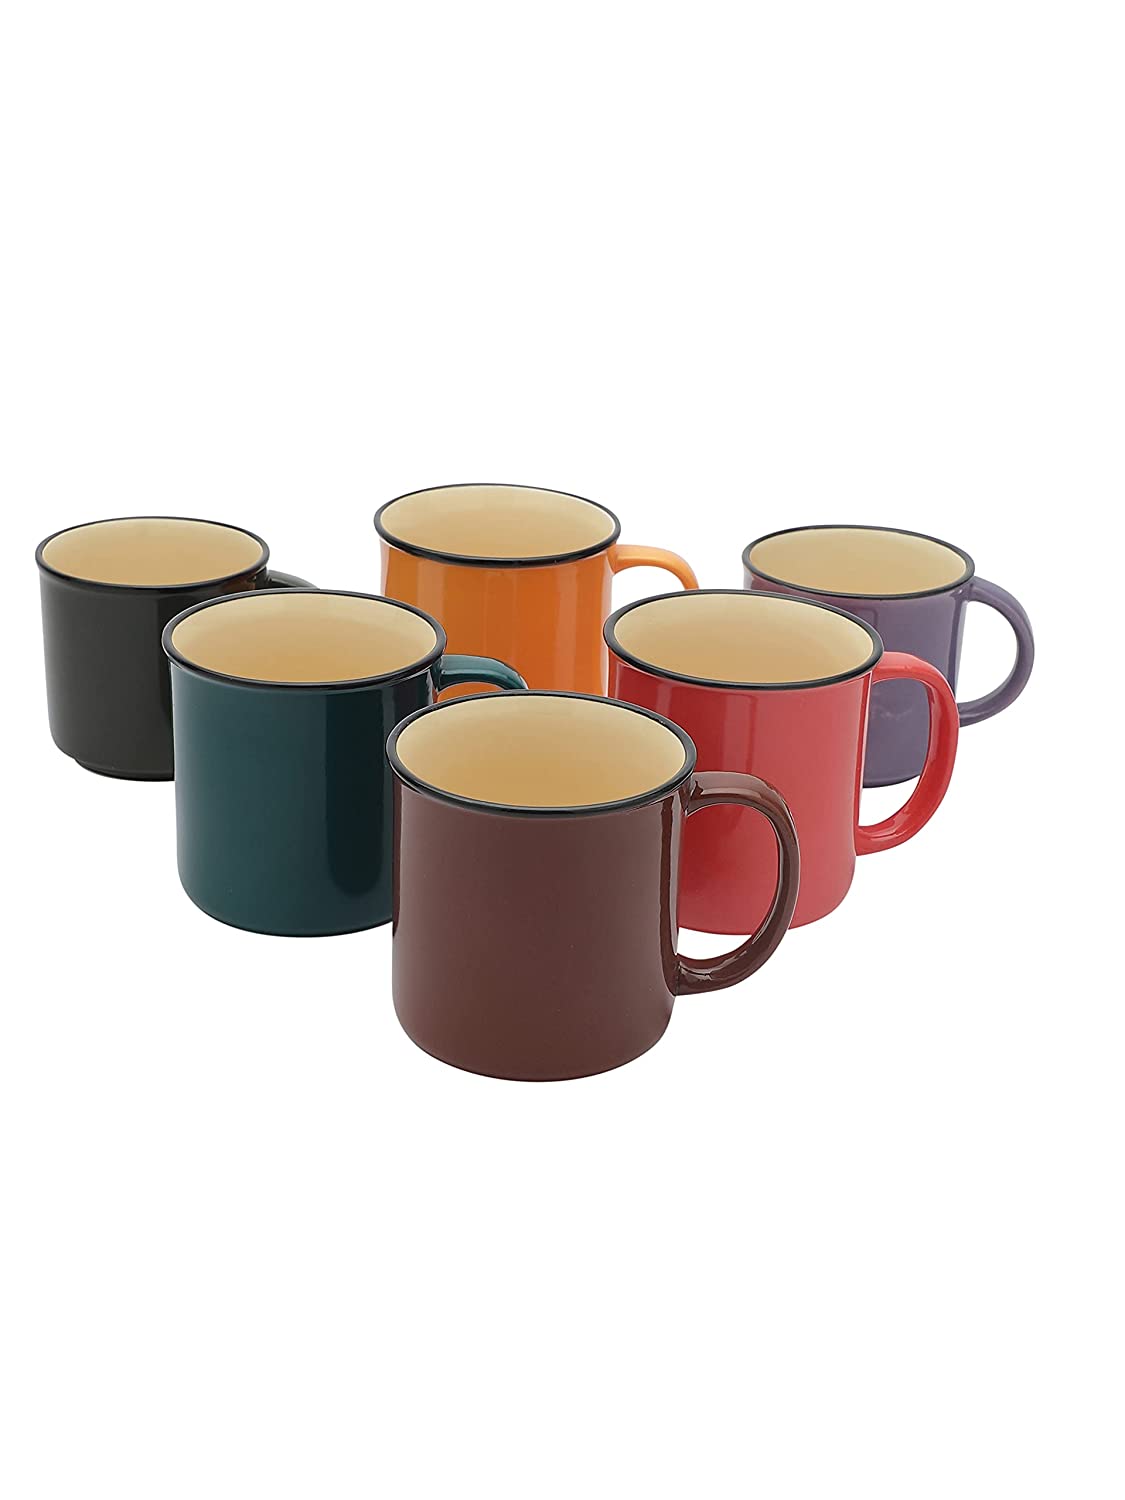 JCPL Marc Coffee Mug/ Tea Cup Medium, Set of 6